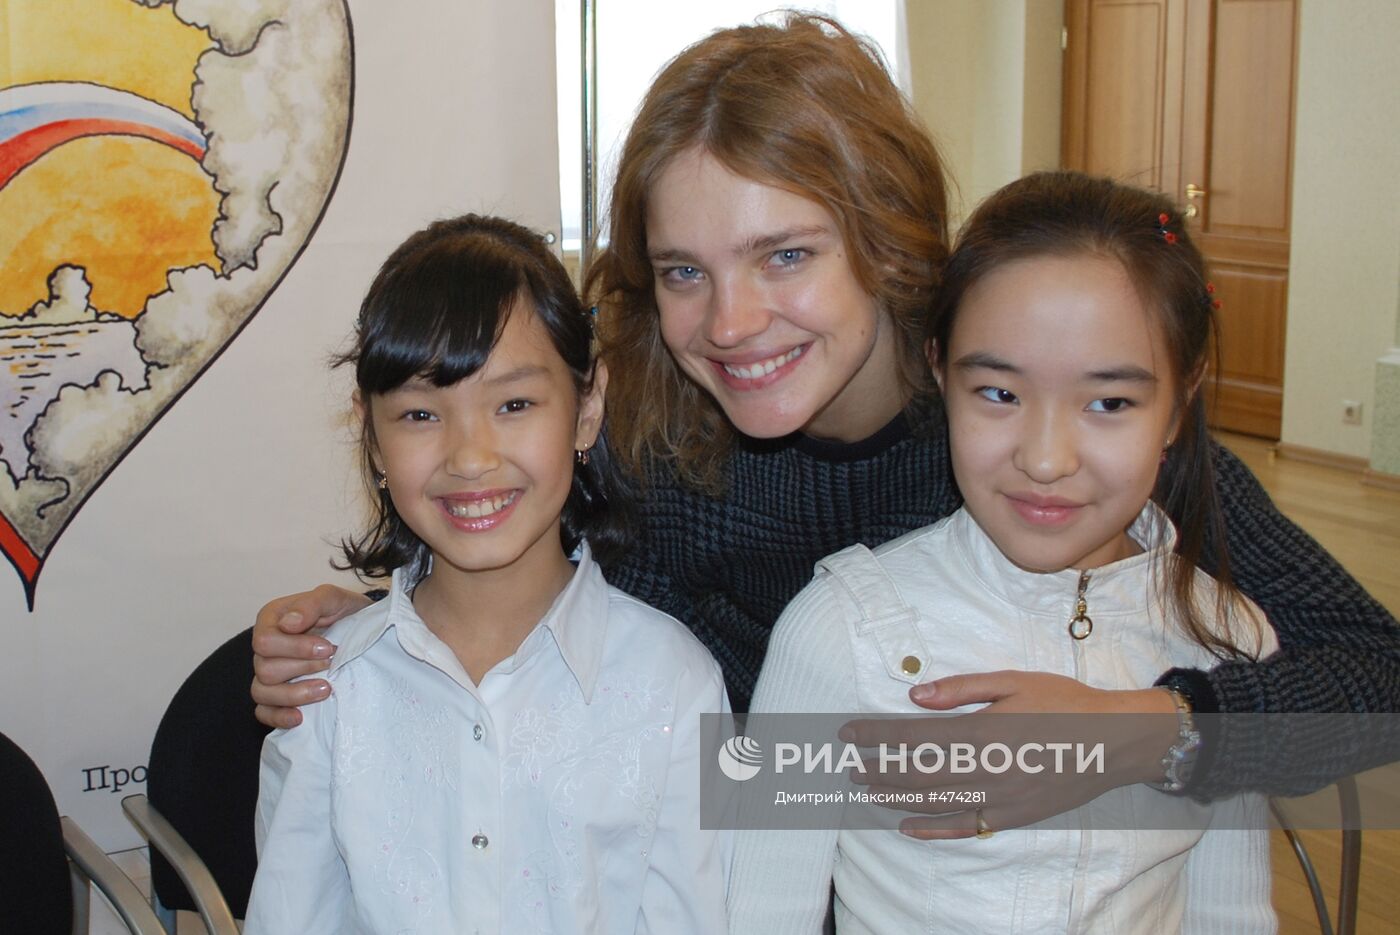 Супермодель Наталья Водянова подарила Улан-Удэ детский городок